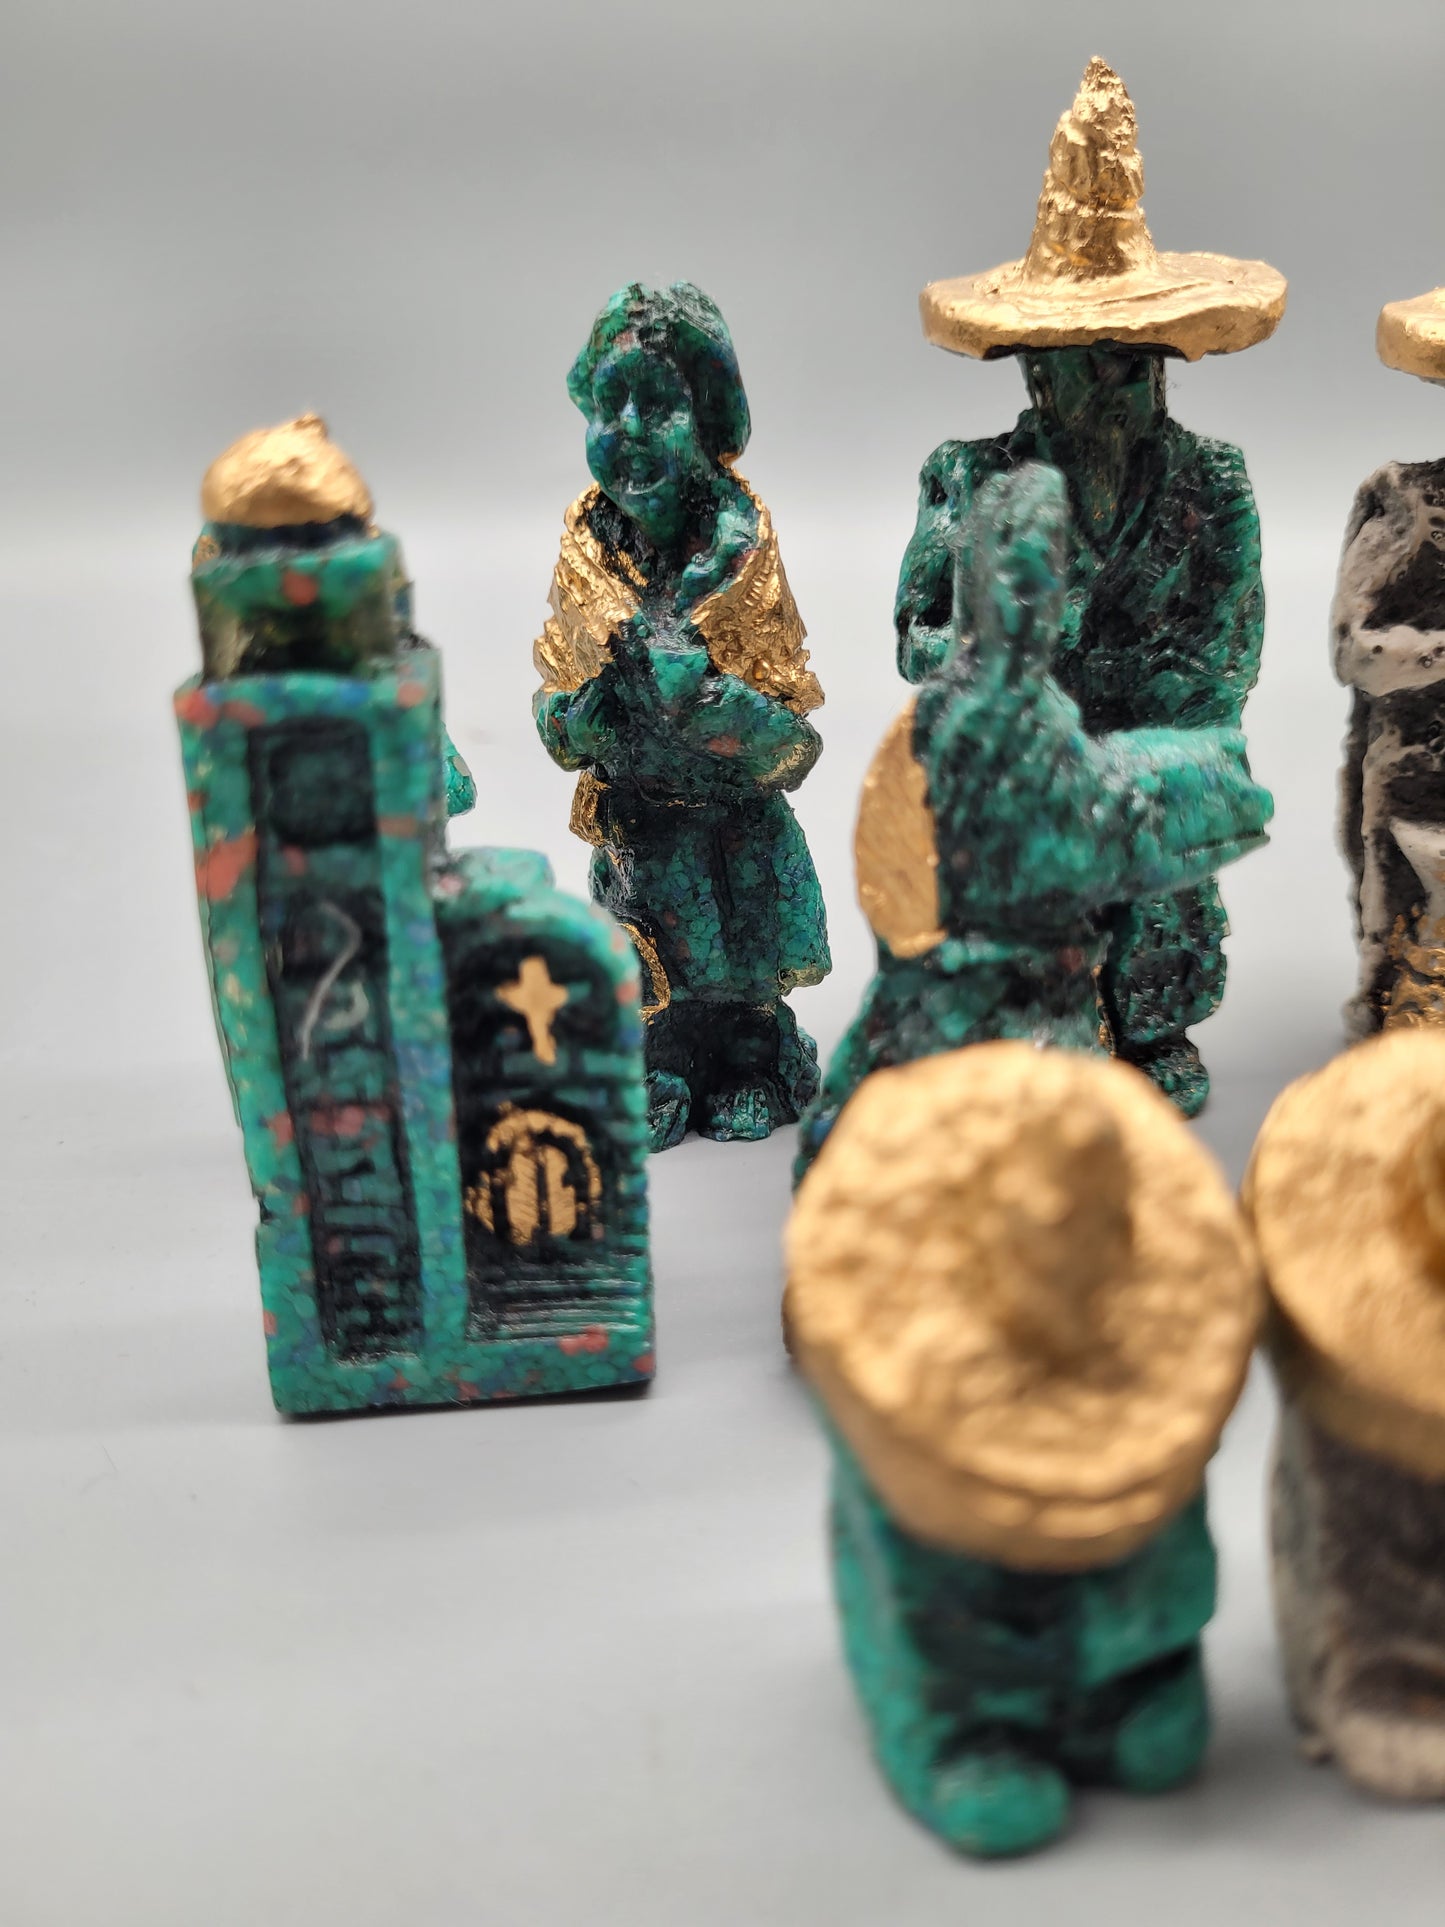 Antike mexikanische Schachfiguren aus Bronze - 32-teiliges Set